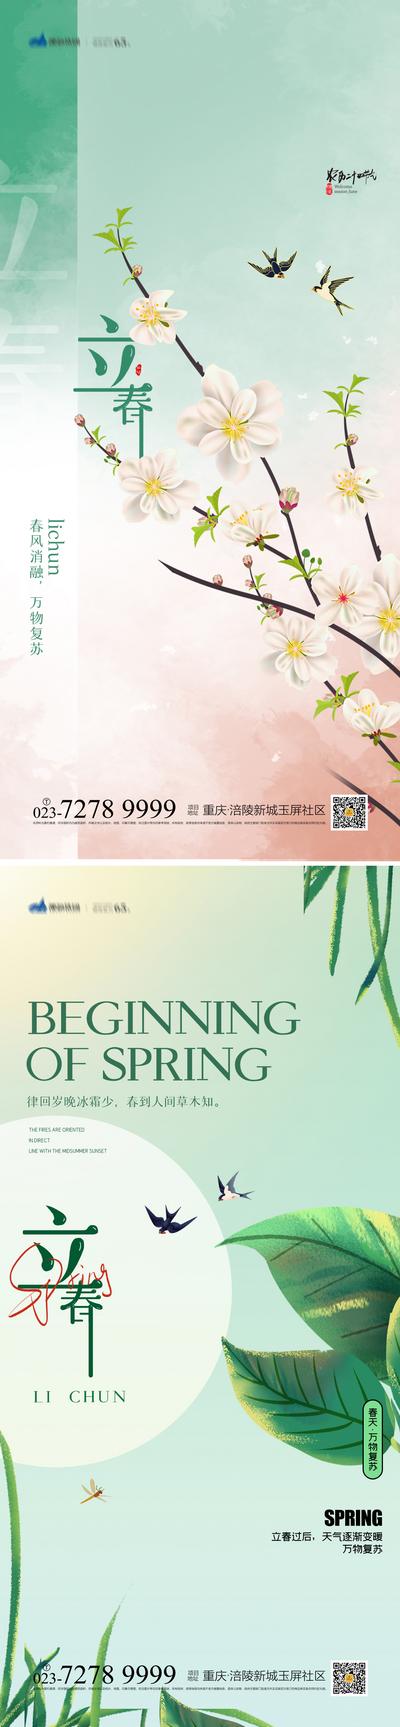 南门网 海报 二十四节气 立春 春天 鸟语花香 桃花 燕子 景色 系列